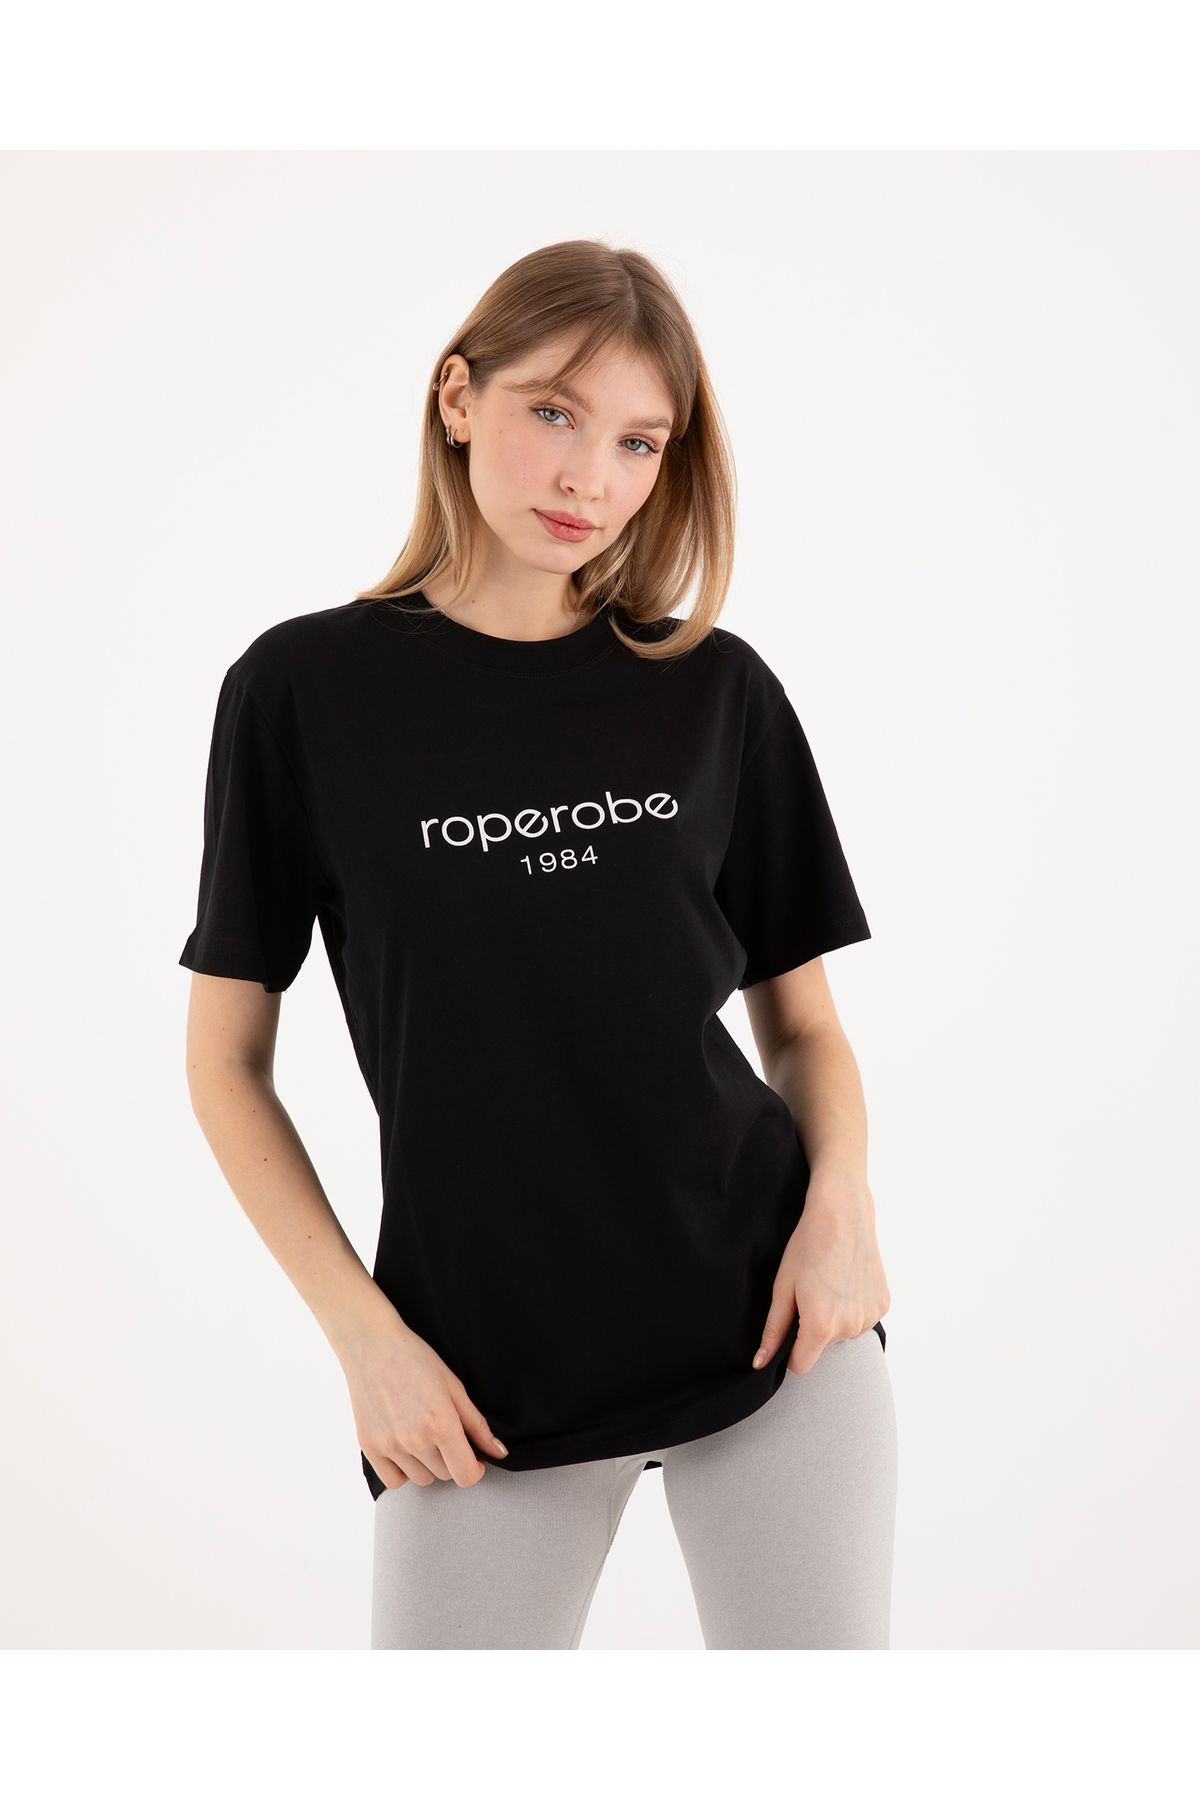 Roperobe Regular Unisex Bisiklet Yaka Siyah T-Shirt | Roperobe 1984